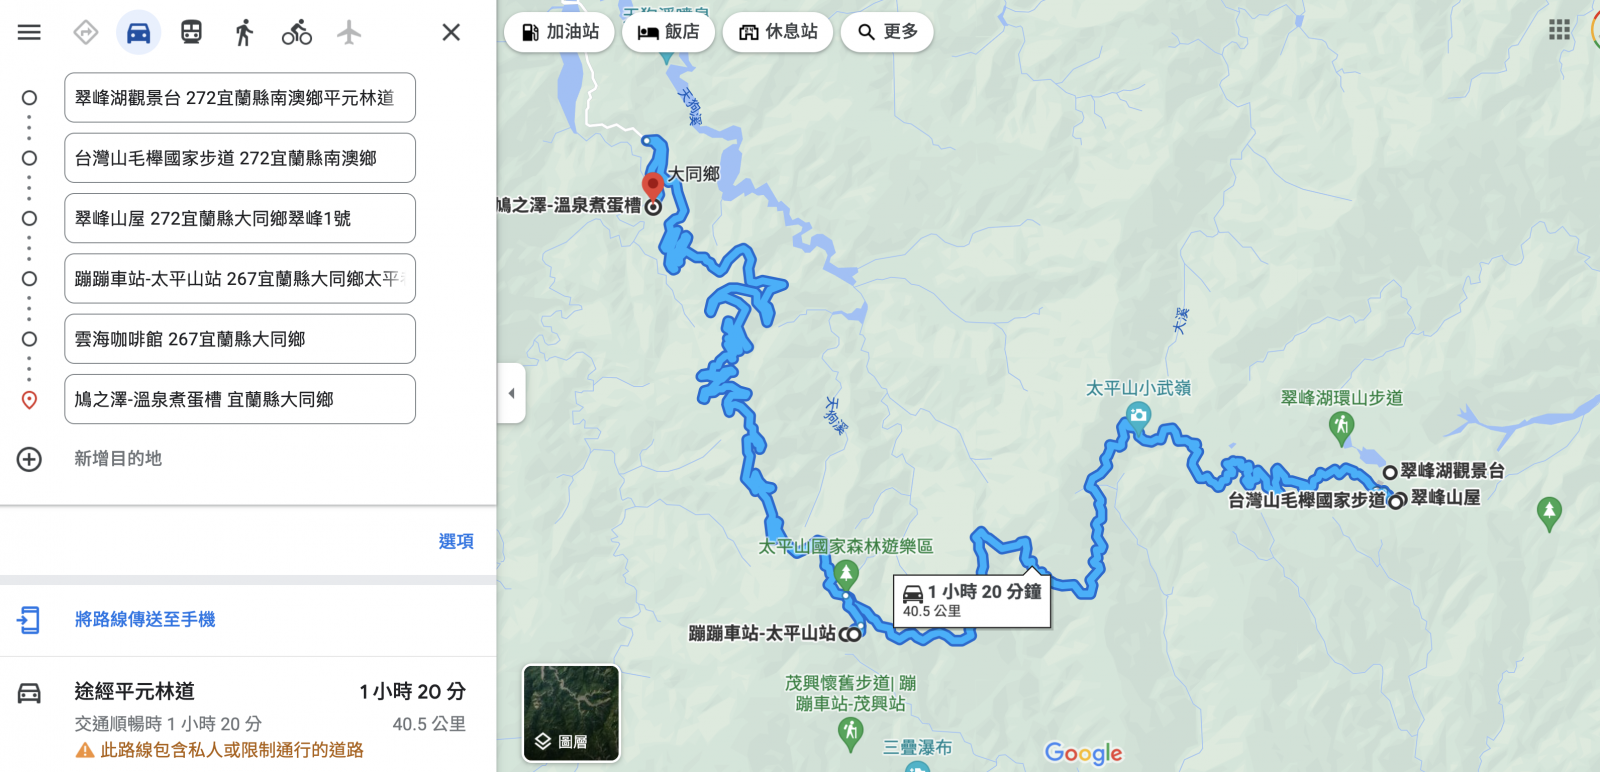 太平山景點》翠峰湖環山步道，下車十分鐘即抵達鏡面湖泊，全球首條寧靜步道